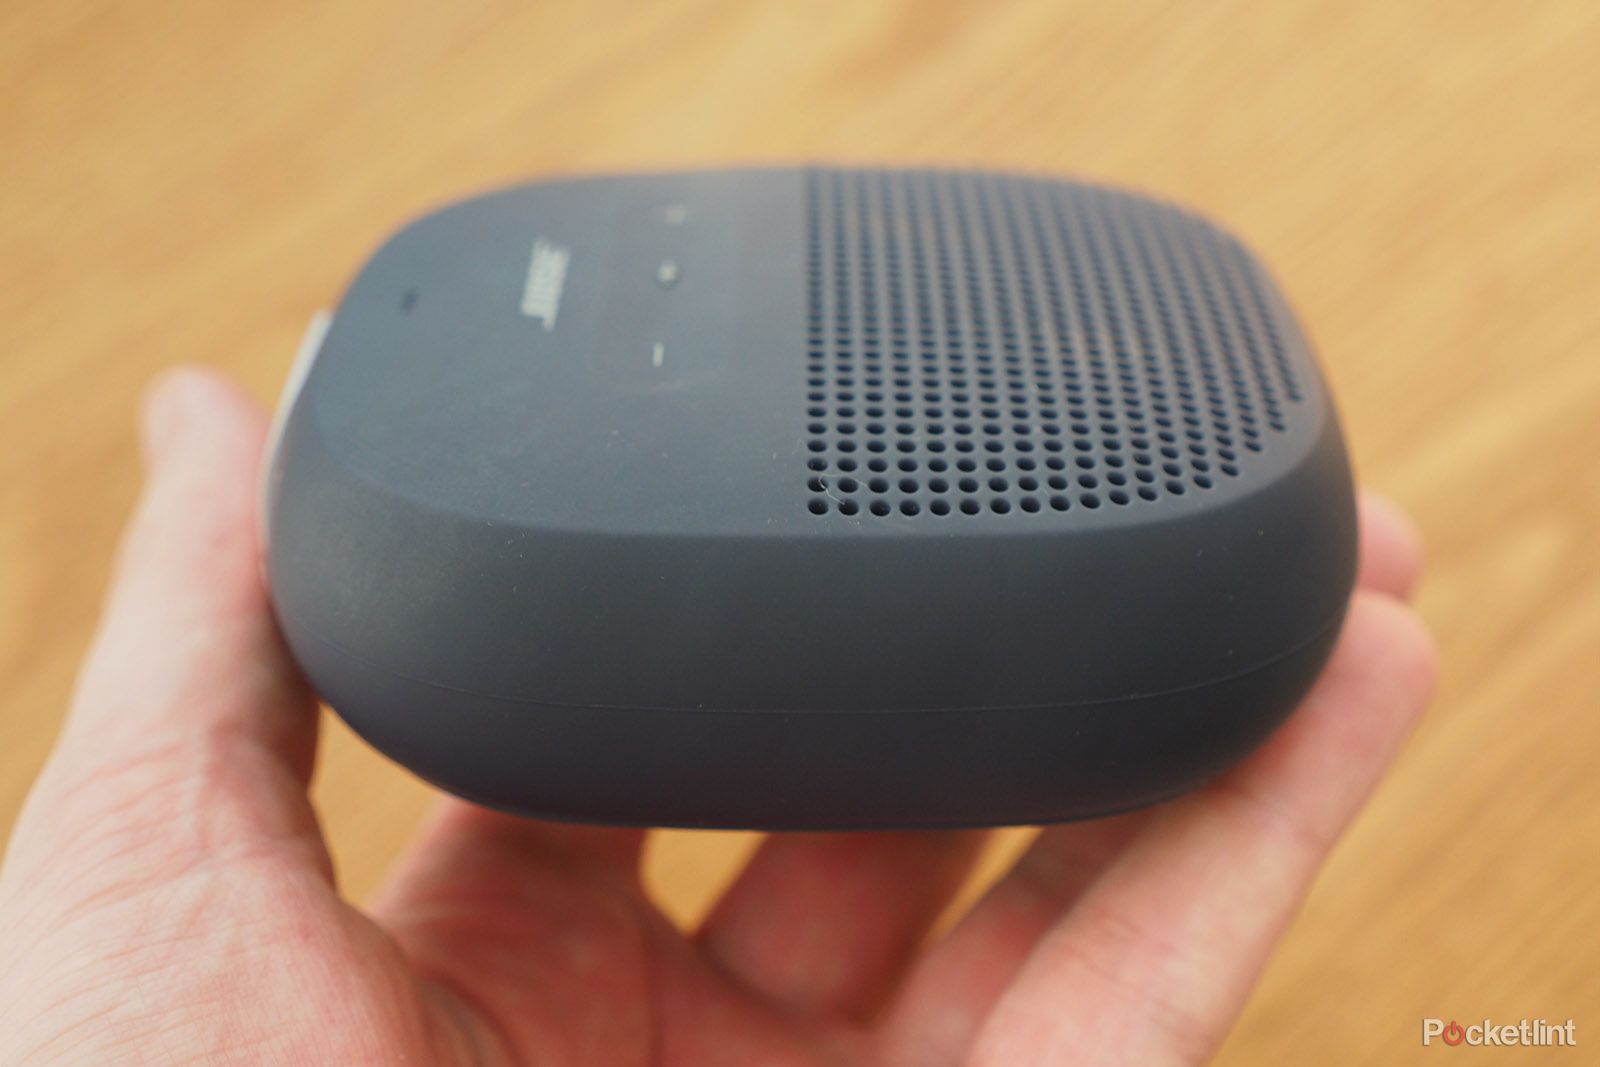 Gamatech - *Bose Soundlink Micro*  ••••••••••••••••••••••••••••••••••••••••••••••••• El altavoz Bluetooth Bose  SoundLink Micro brinda un sonido tan bueno para su tamaño que siempre lo  querrás llevar contigo. La tecnología patentada de Bose permite